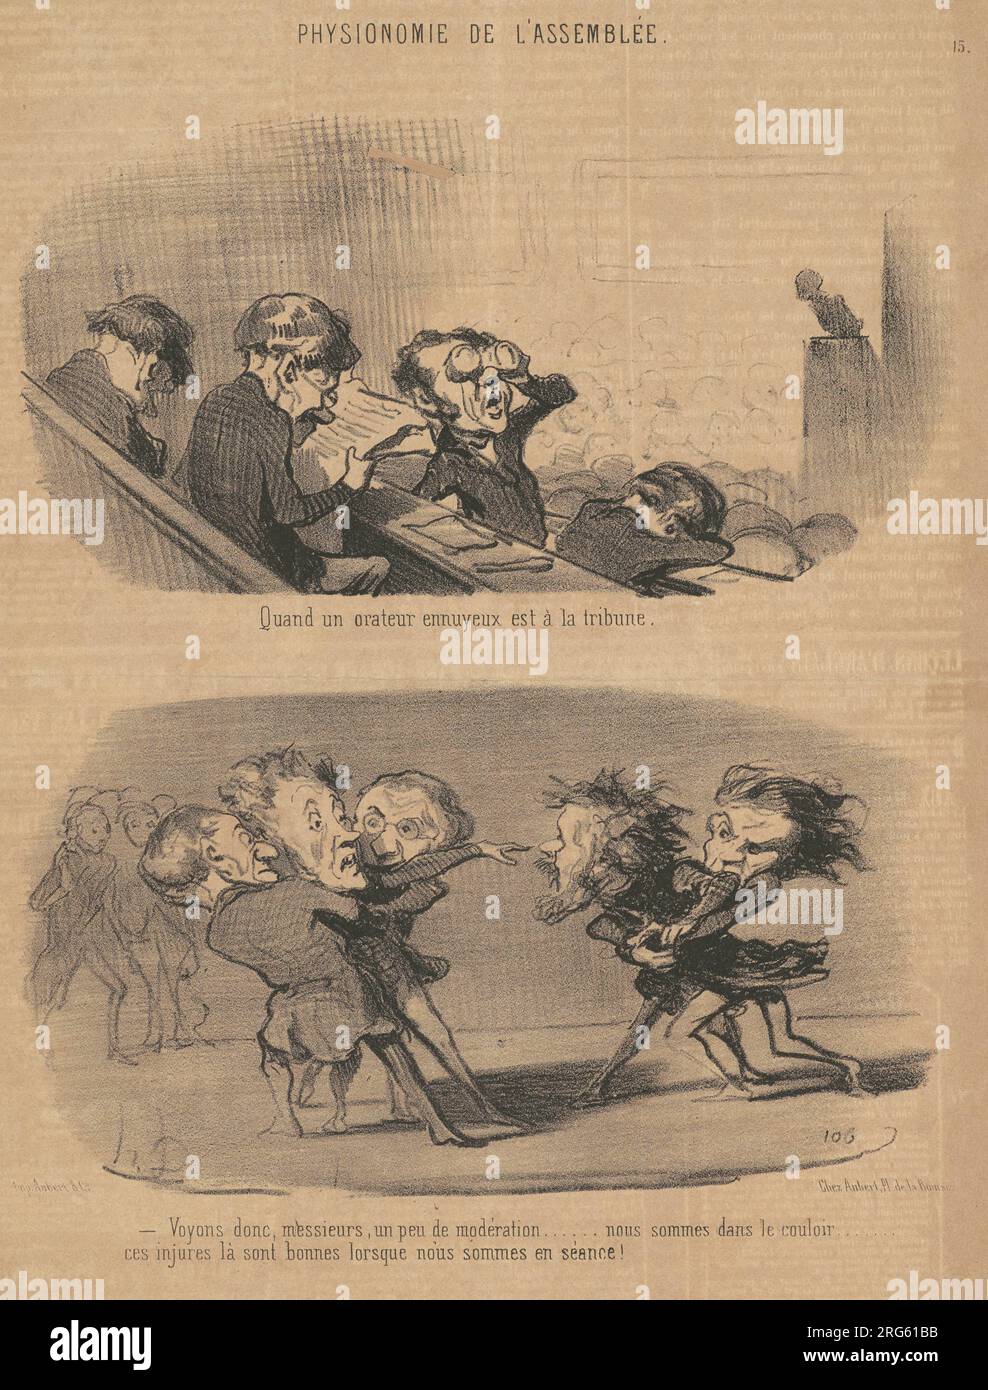 Quand un orateur ennuyeux est a la tribune 19th century by Honoré Daumier Stock Photo